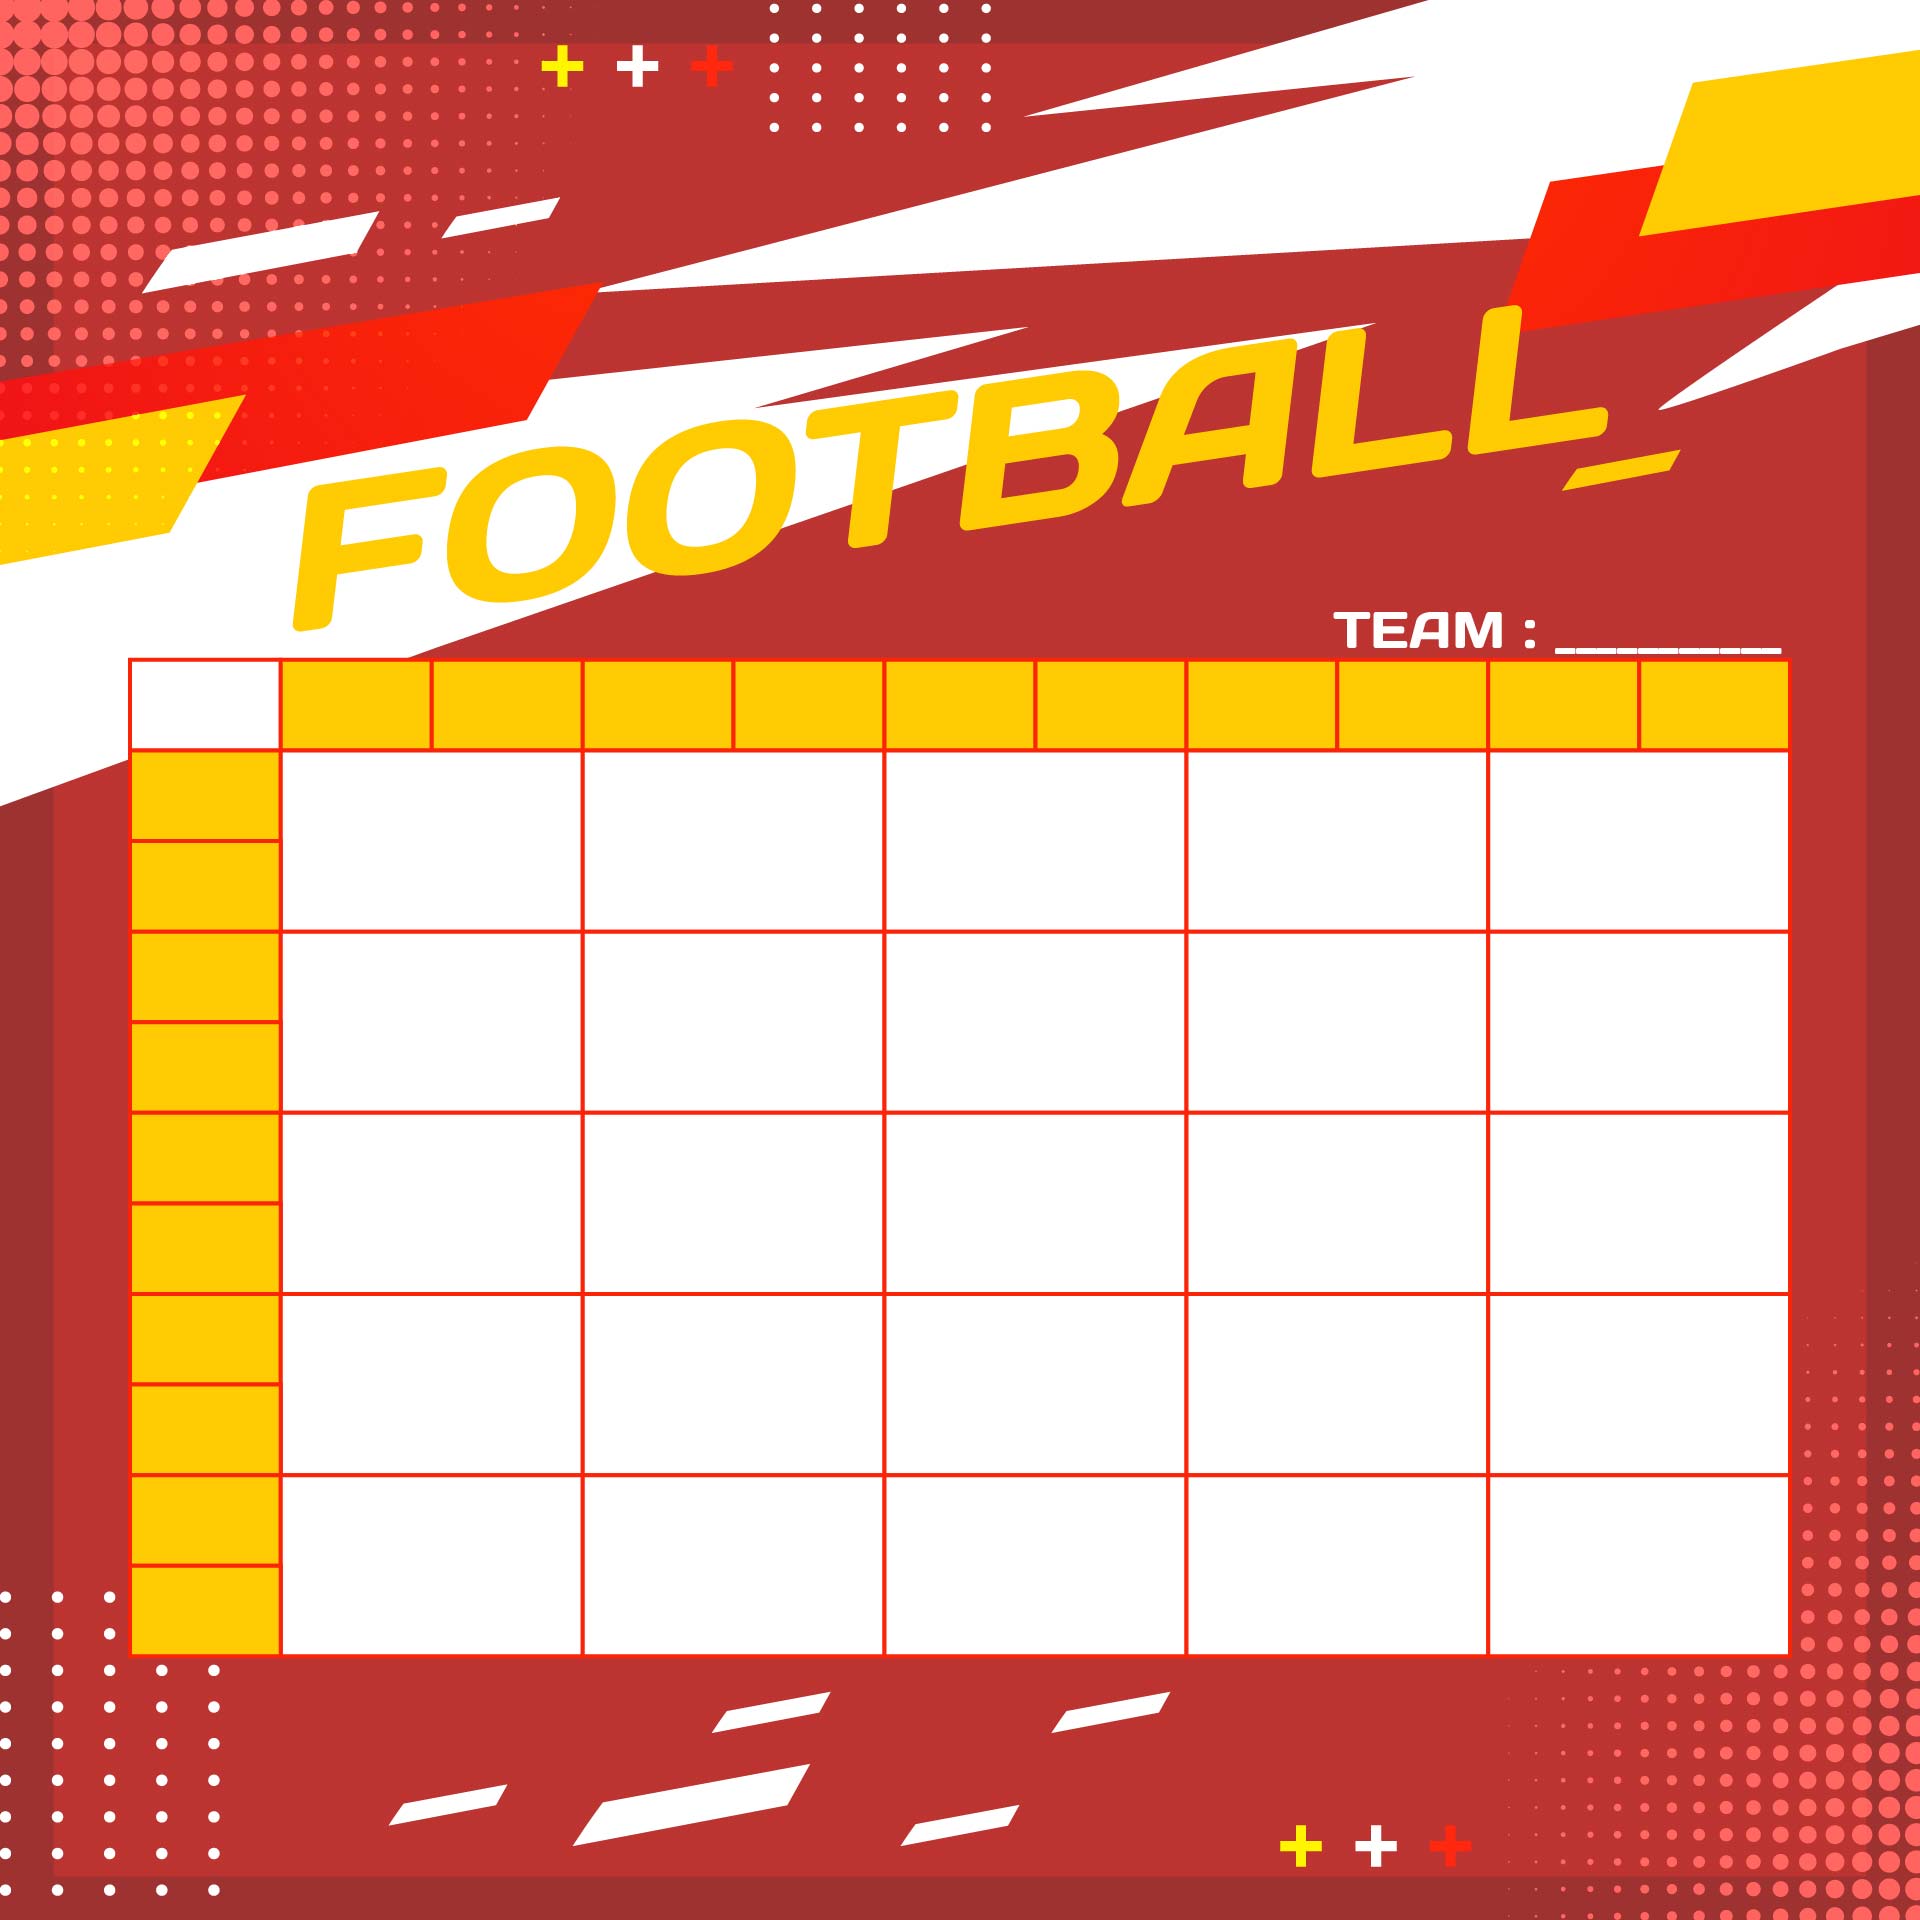 Printable Football Pool Sheets